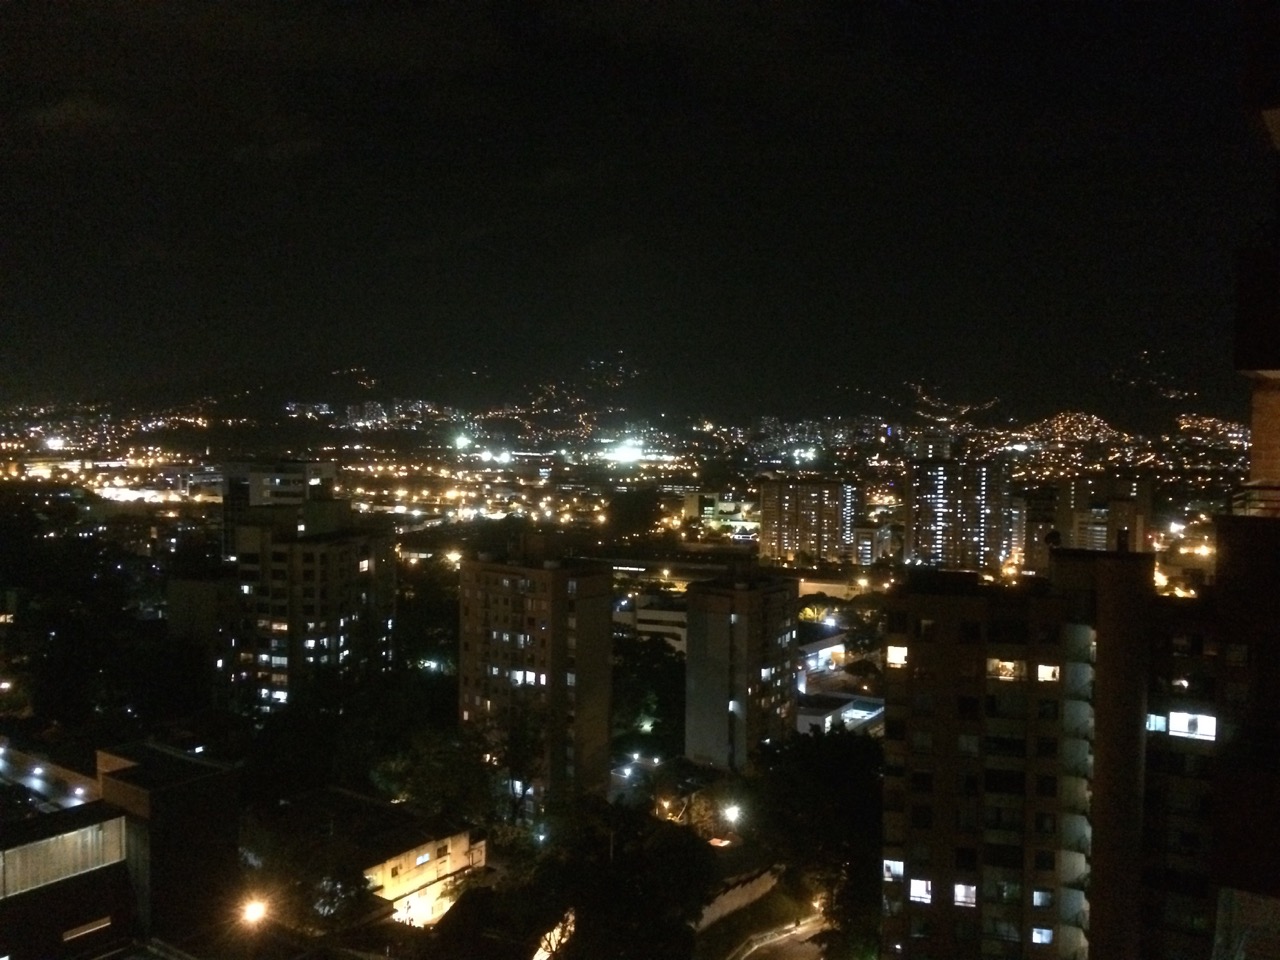 I love Medellin at night